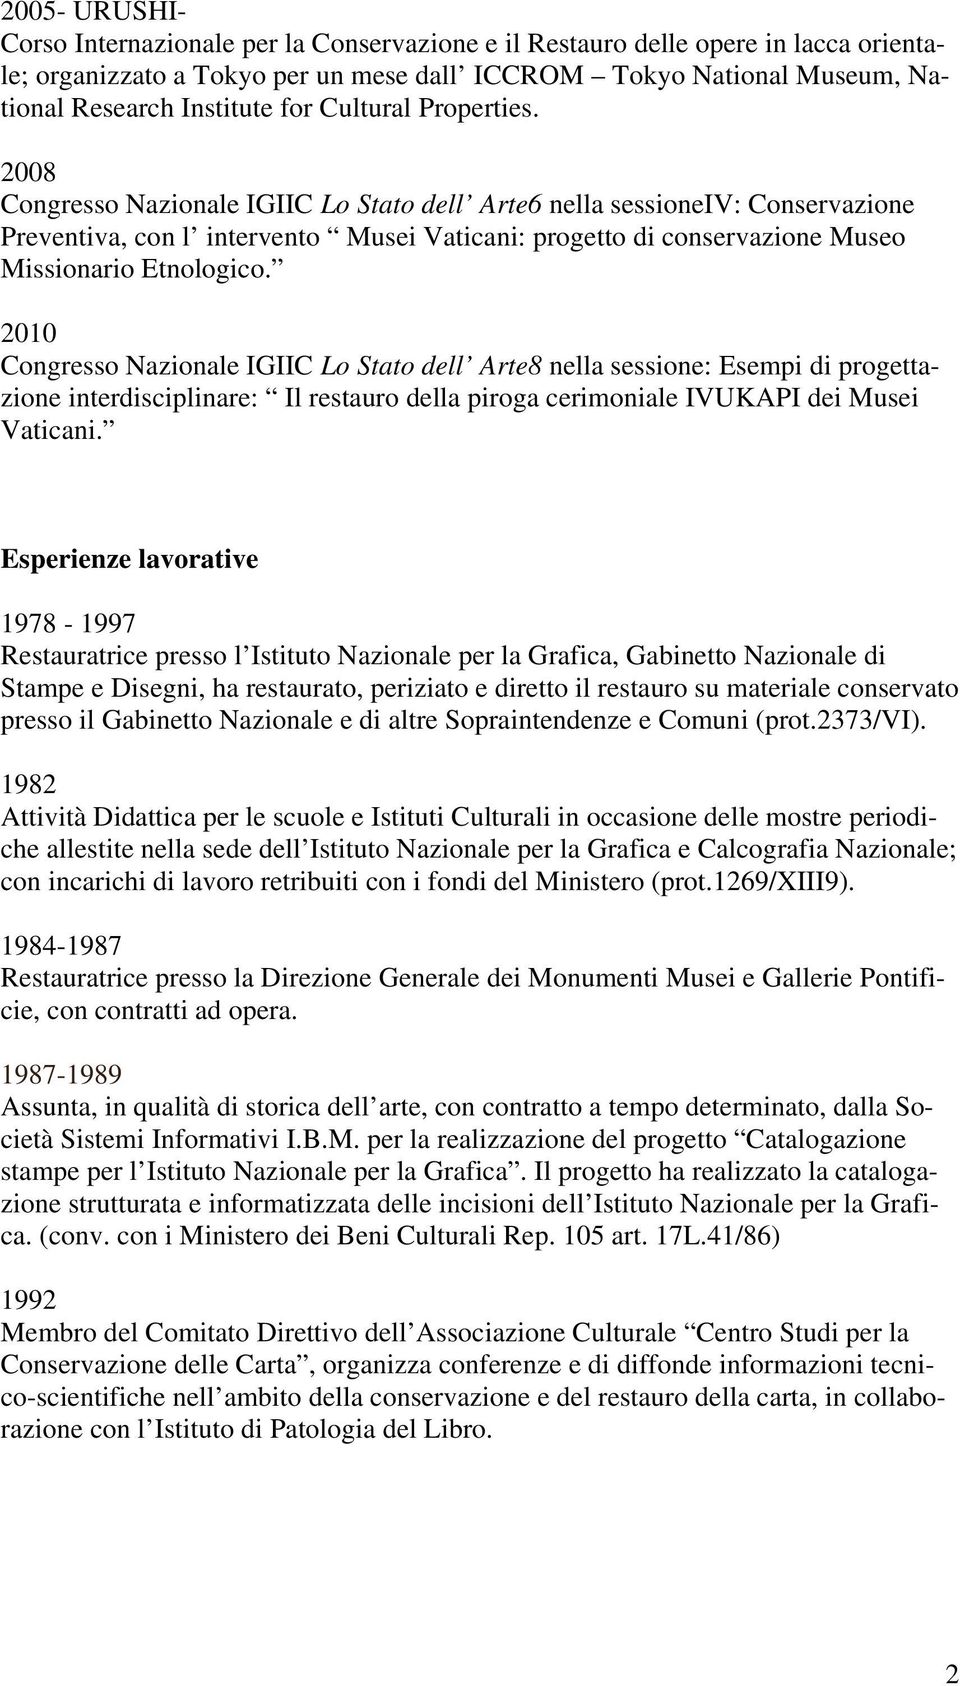 2008 Congresso Nazionale IGIIC Lo Stato dell Arte6 nella sessioneiv: Conservazione Preventiva, con l intervento Musei Vaticani: progetto di conservazione Museo Missionario Etnologico.